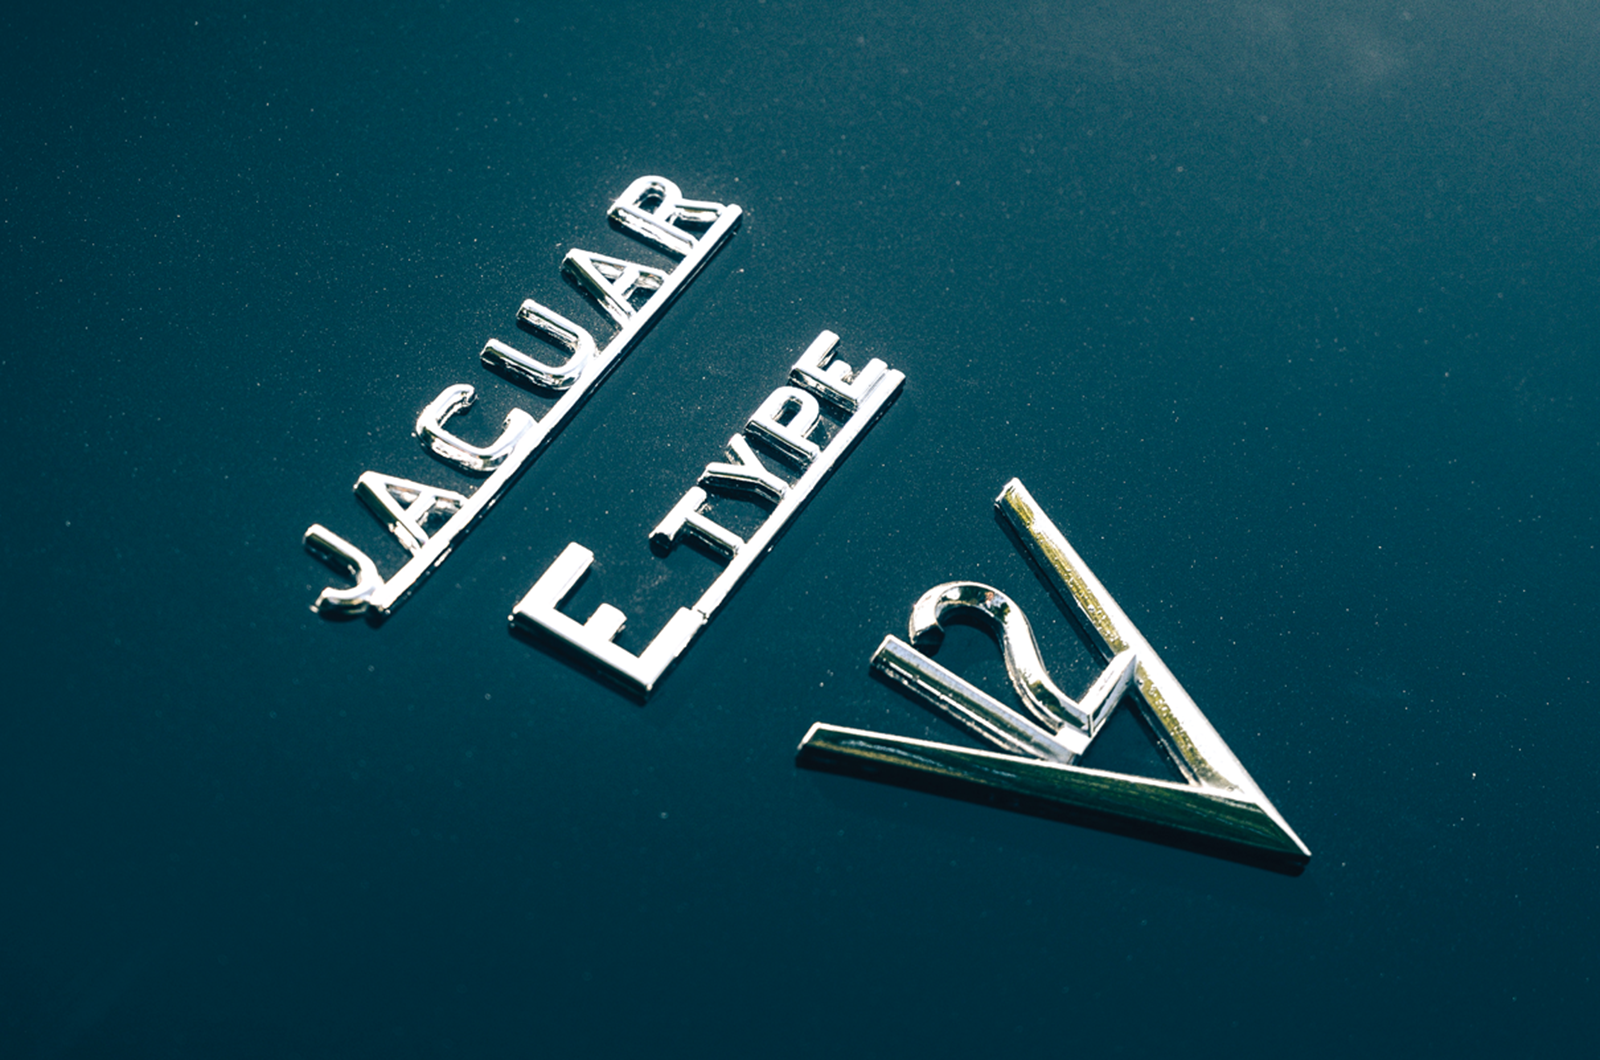 Classic & Sports Car – Jaguar E-types set for London Concours showcase